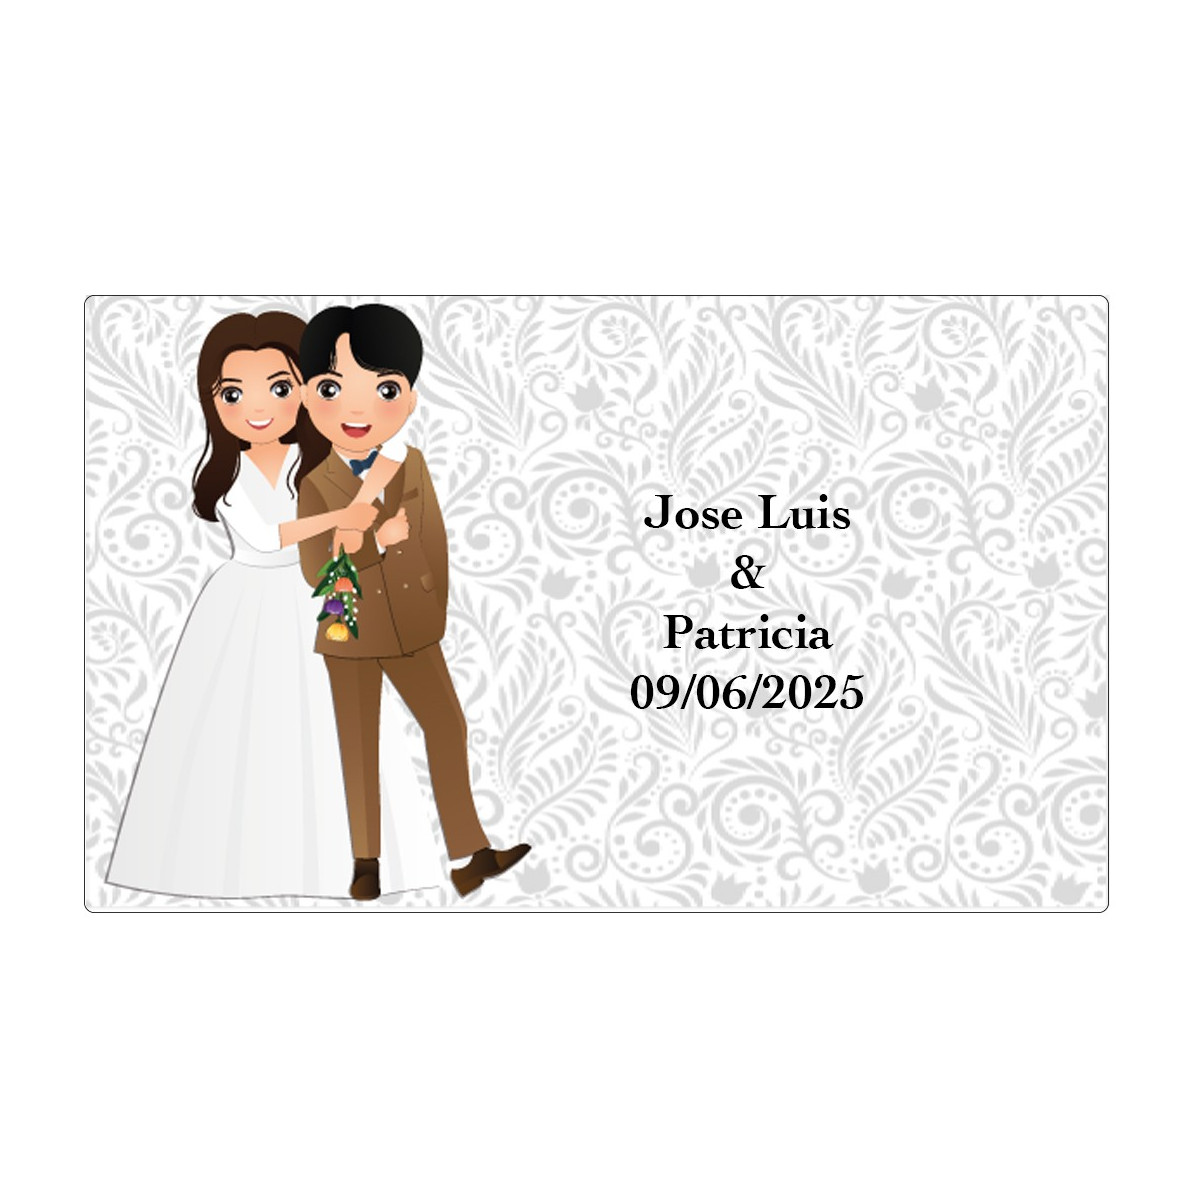 Adhesivo para boda personalizado con nombres y fecha